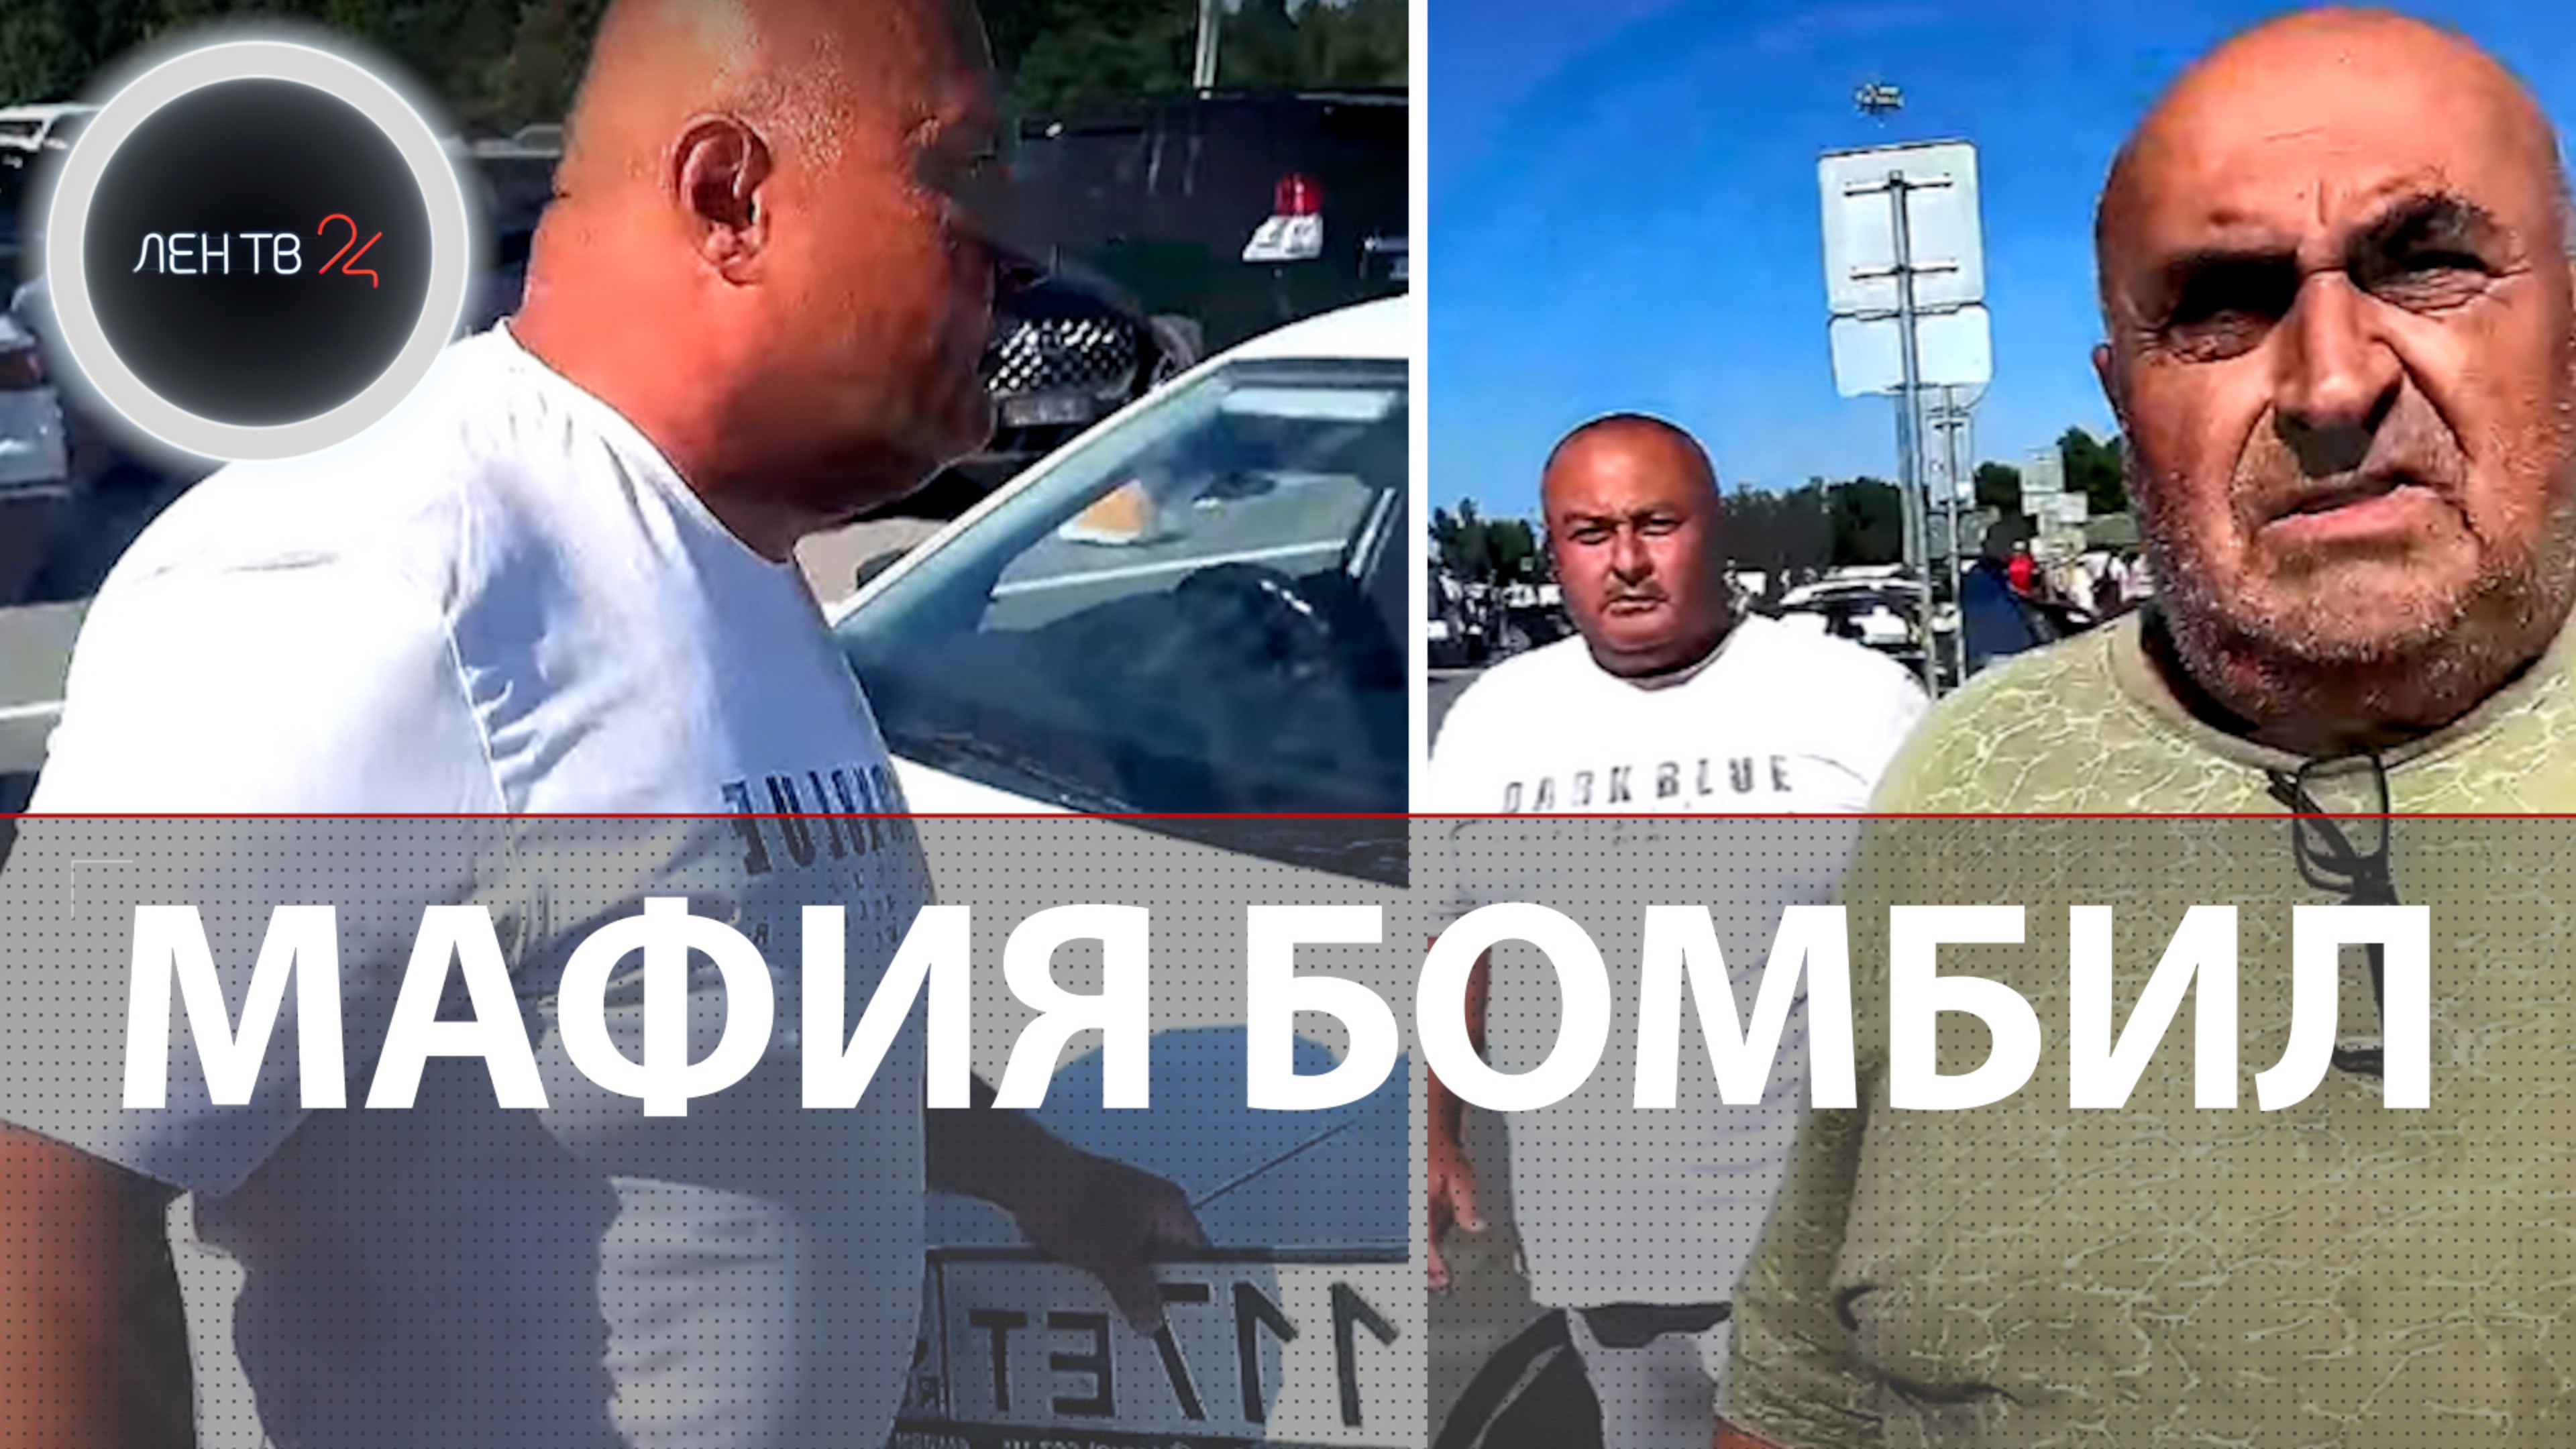 Мафия бомбил напала на таксиста Яндекса в аэропорту Калининграда